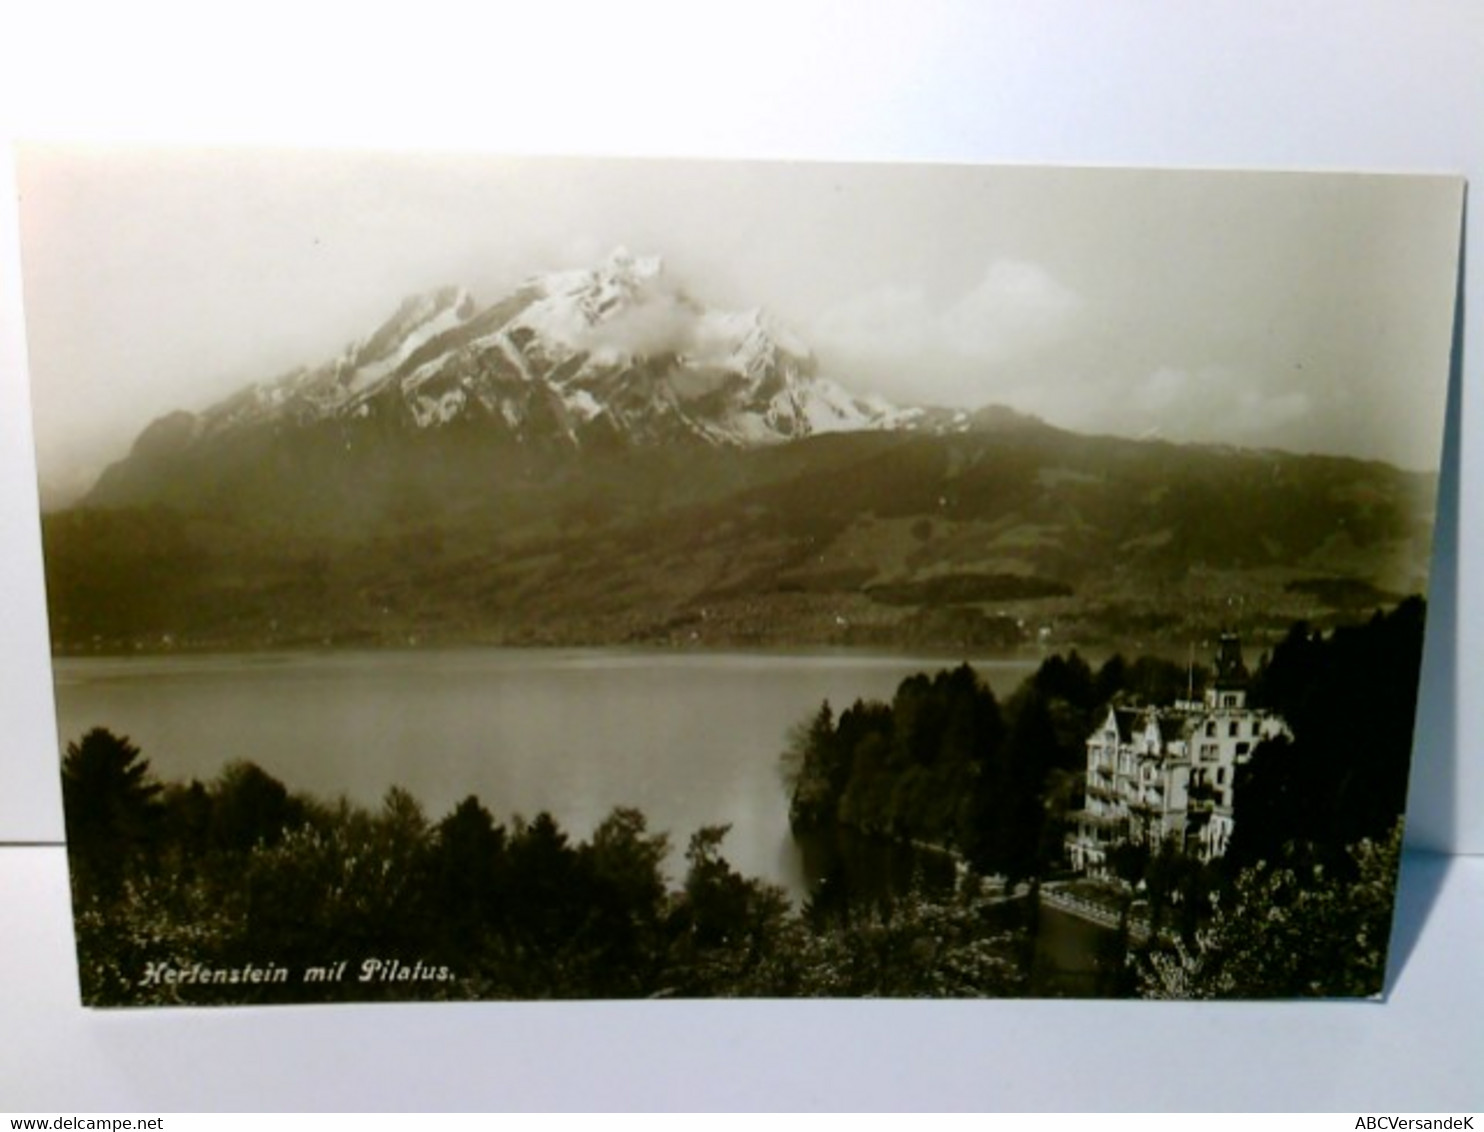 Hertenstein Mit Pilatus. Schweiz. Alte Ansichtskarte / Postkarte S/w, Ungel. Um 1910 / 15 ?.  Panoramablick üb - Stein